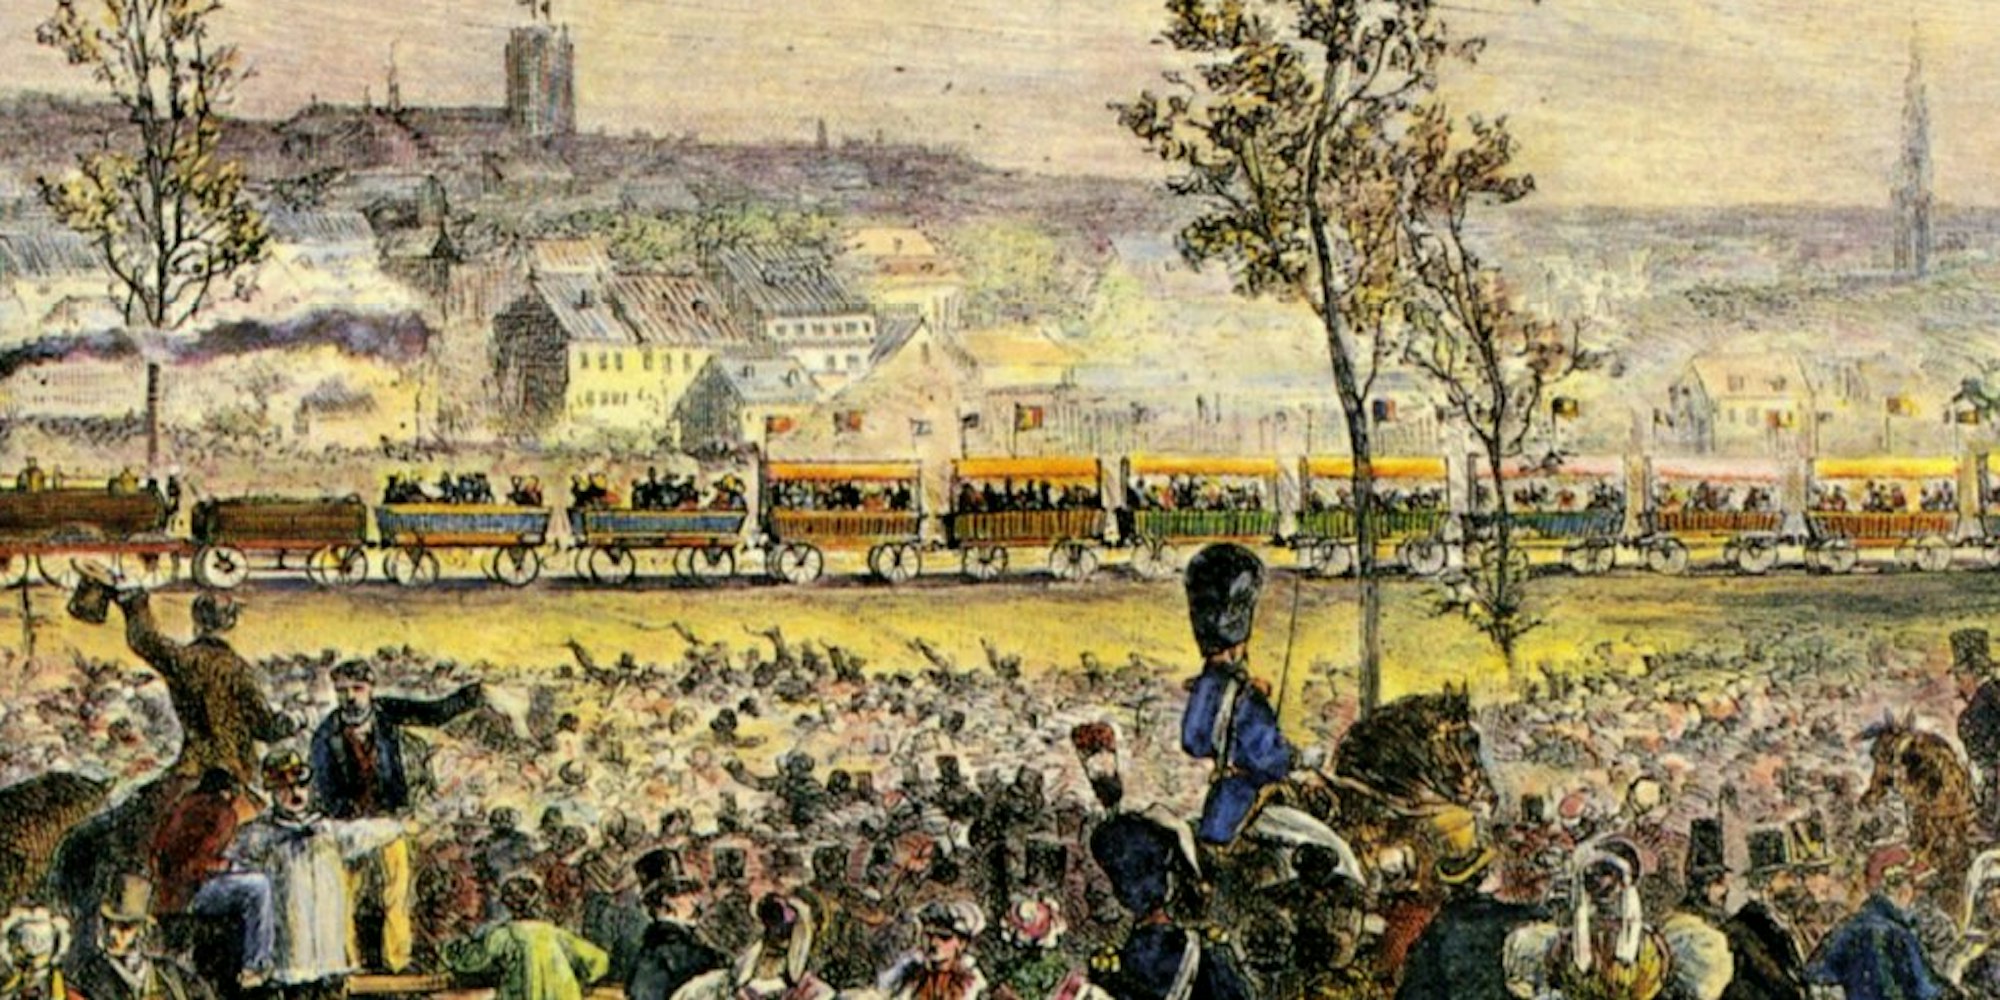 Jubel allerorten: die Eröffnung der ersten Eisenbahnlinie auf dem Kontinent zwischen Brüssel und Mechelen im Mai 1835.